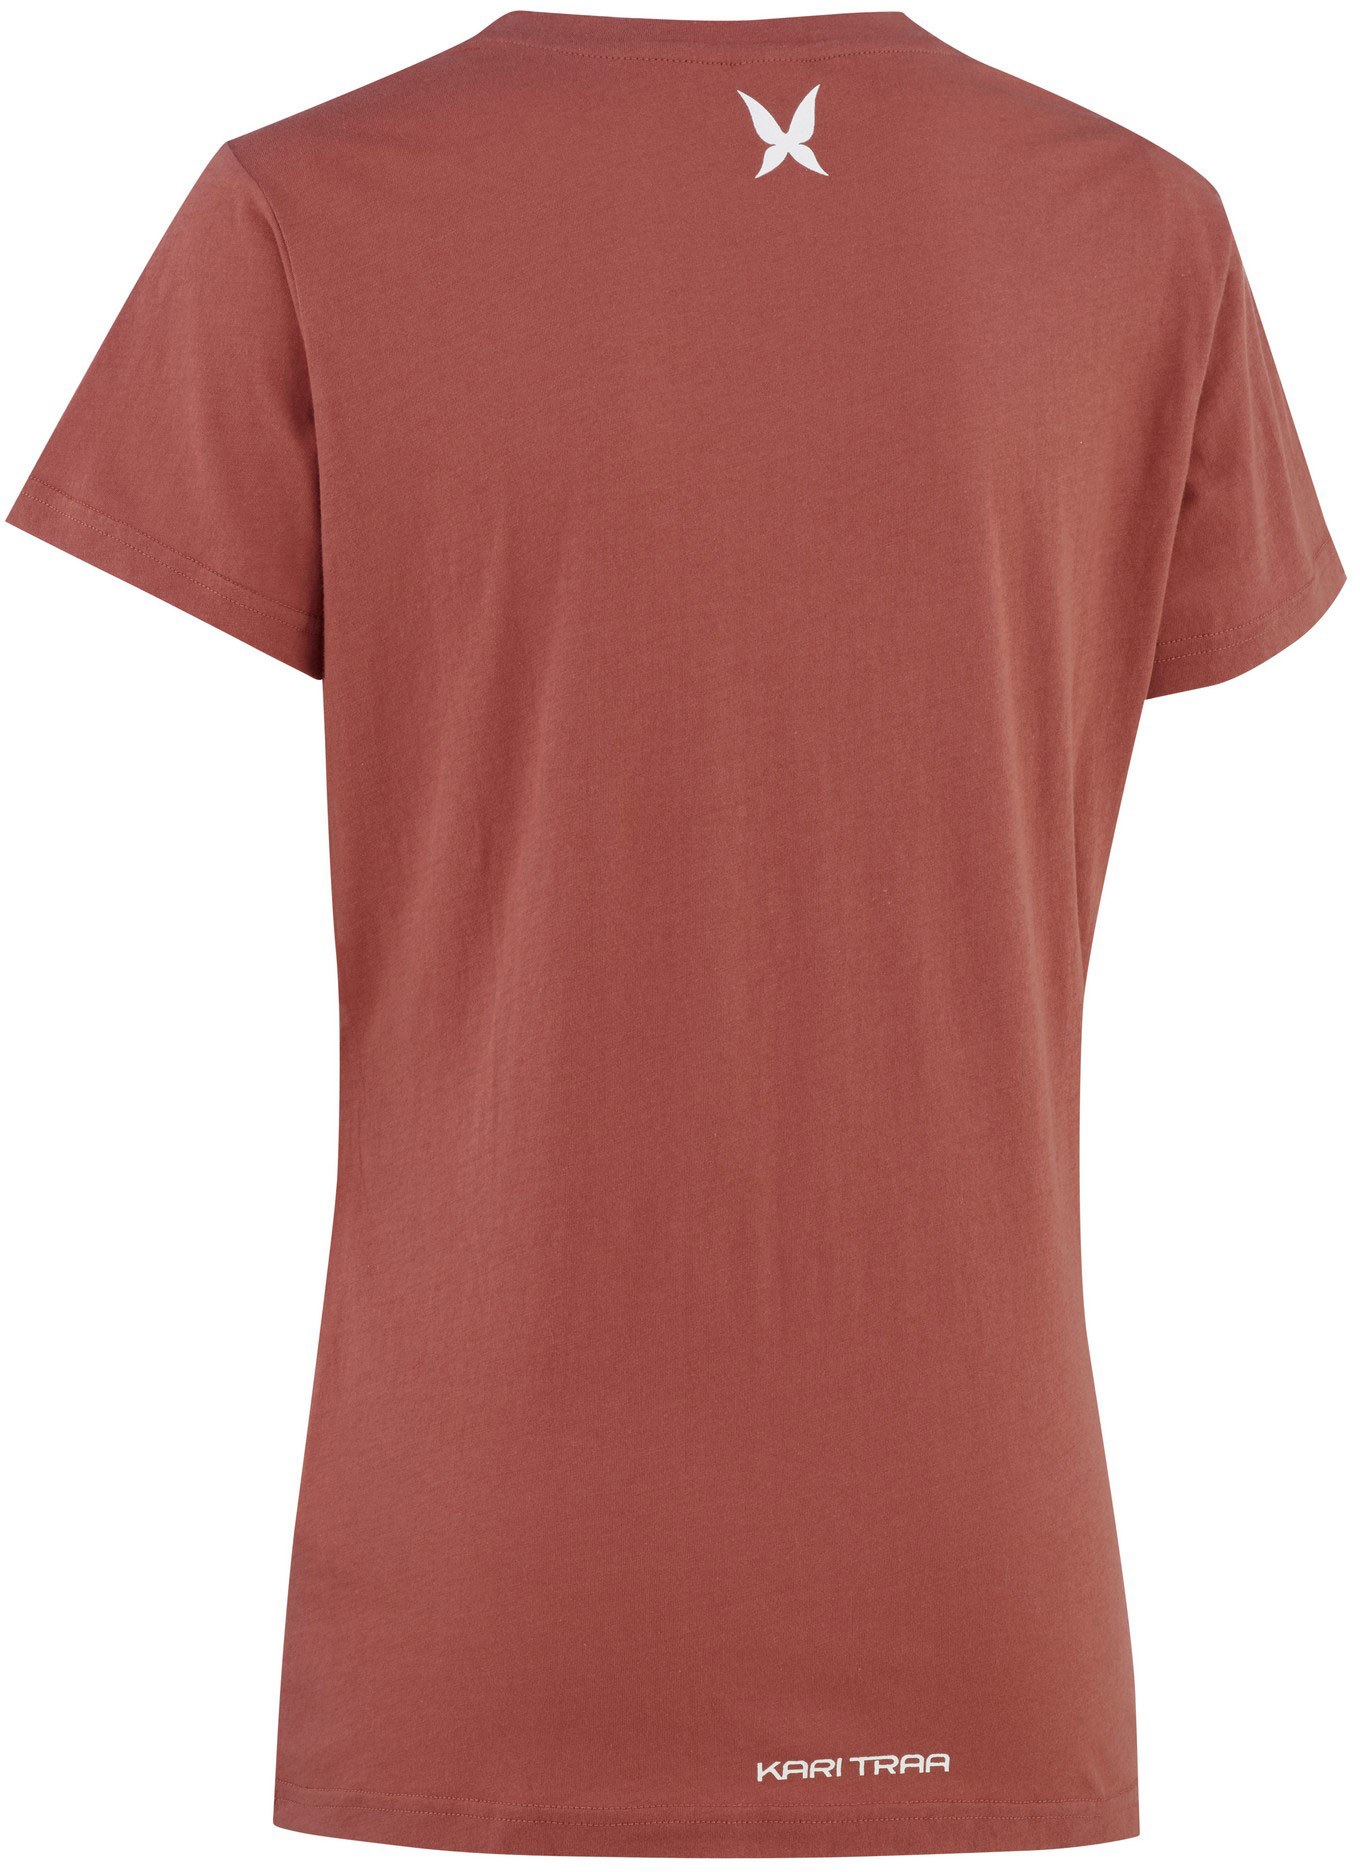 Women's short sleeve T-shirt